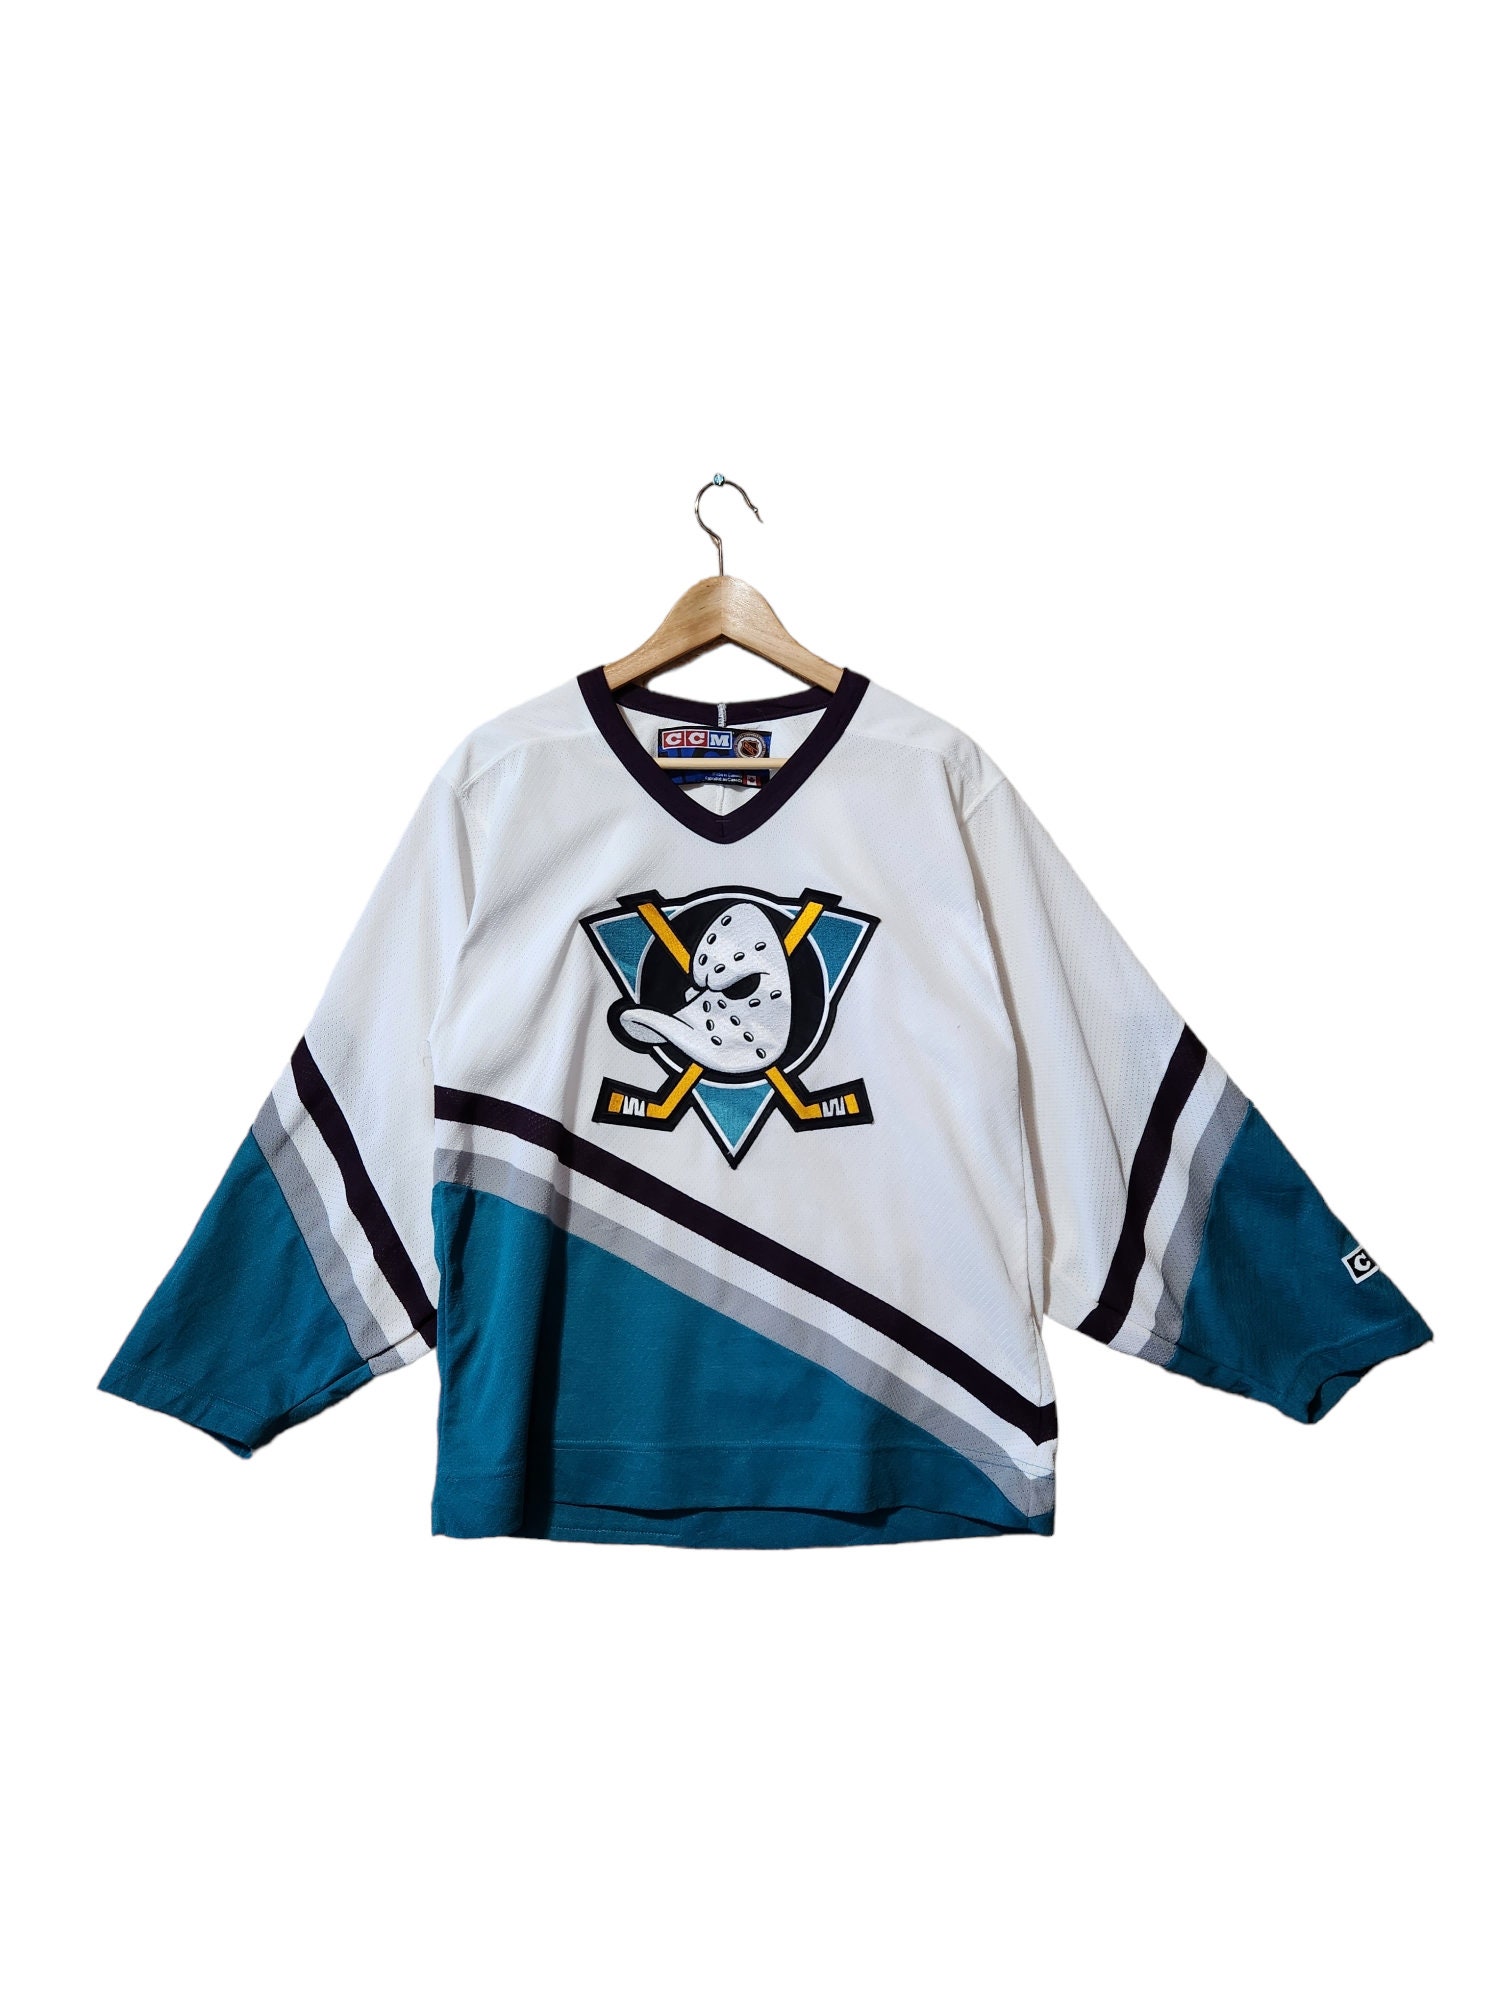 Anaheim Mighty Ducks Jersey Mens XL Starter NHL Hockey 90s Vintage